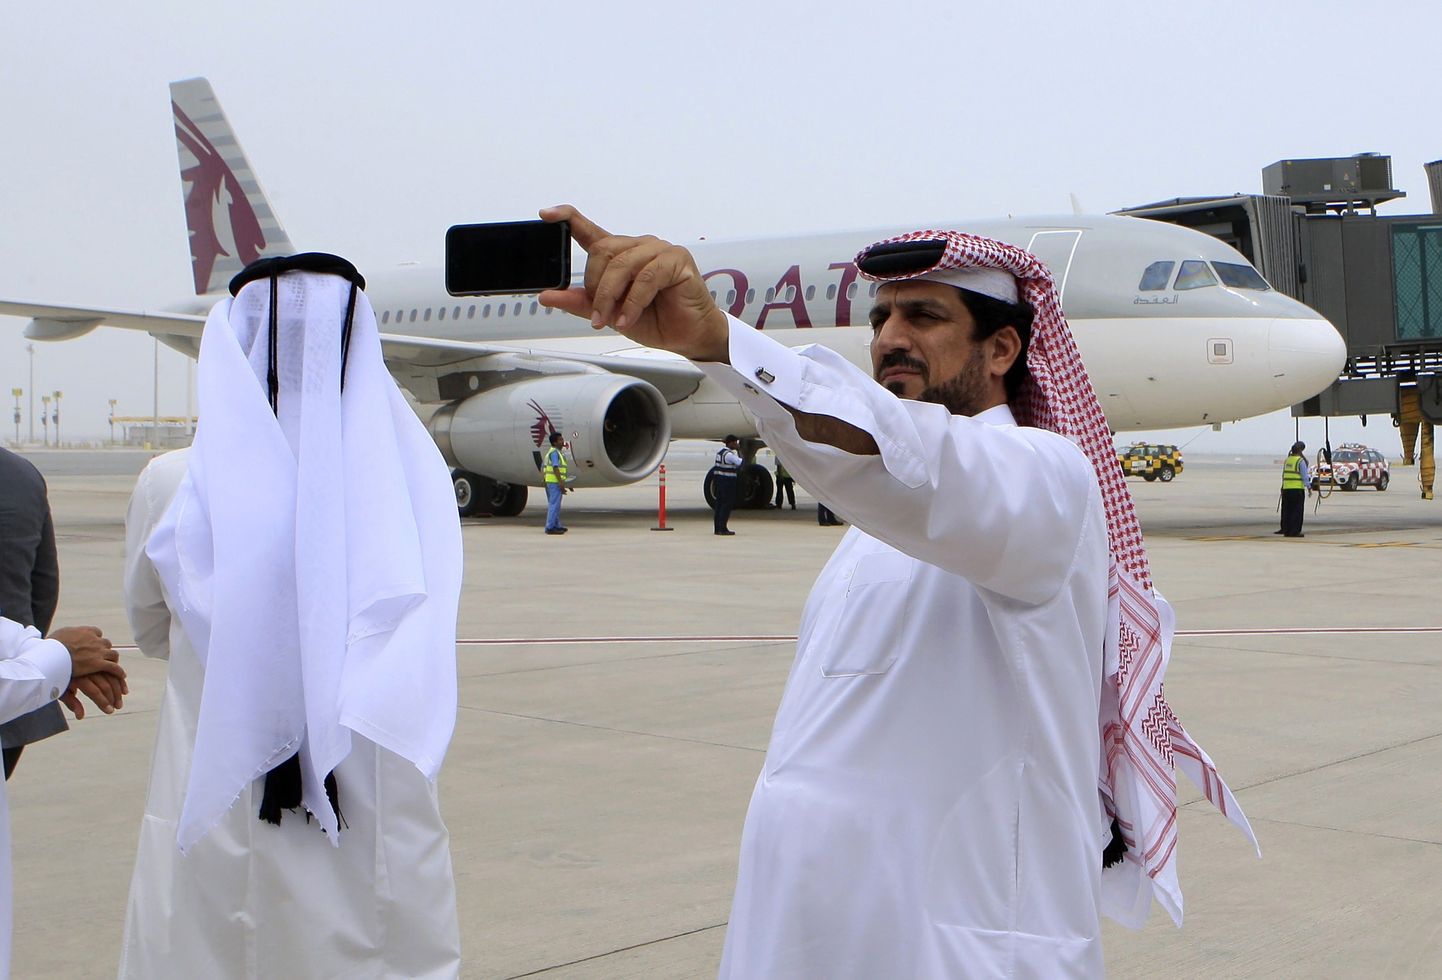 Euroopa lennufirmad on hädas: Lähis-Ida konkurendid võtavad kõik jõukad kliendid. Pildil kaks reisijat end Qatar Airwaysi lennuki taustal pildistamas.